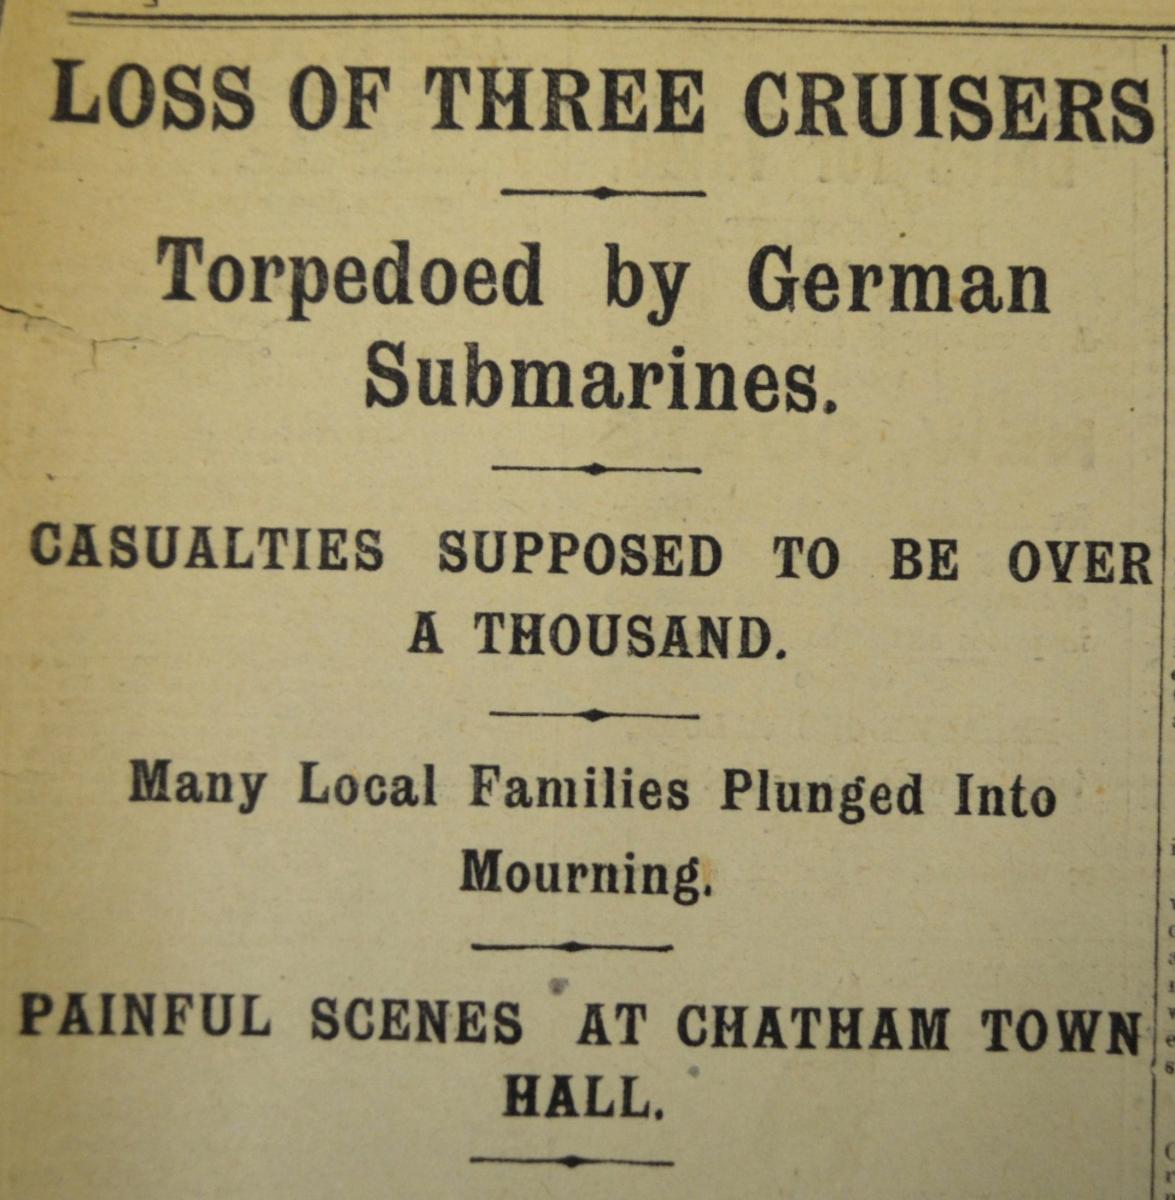 Three Cruisers_Chatham News, 26091914, pg.4_headline (c)